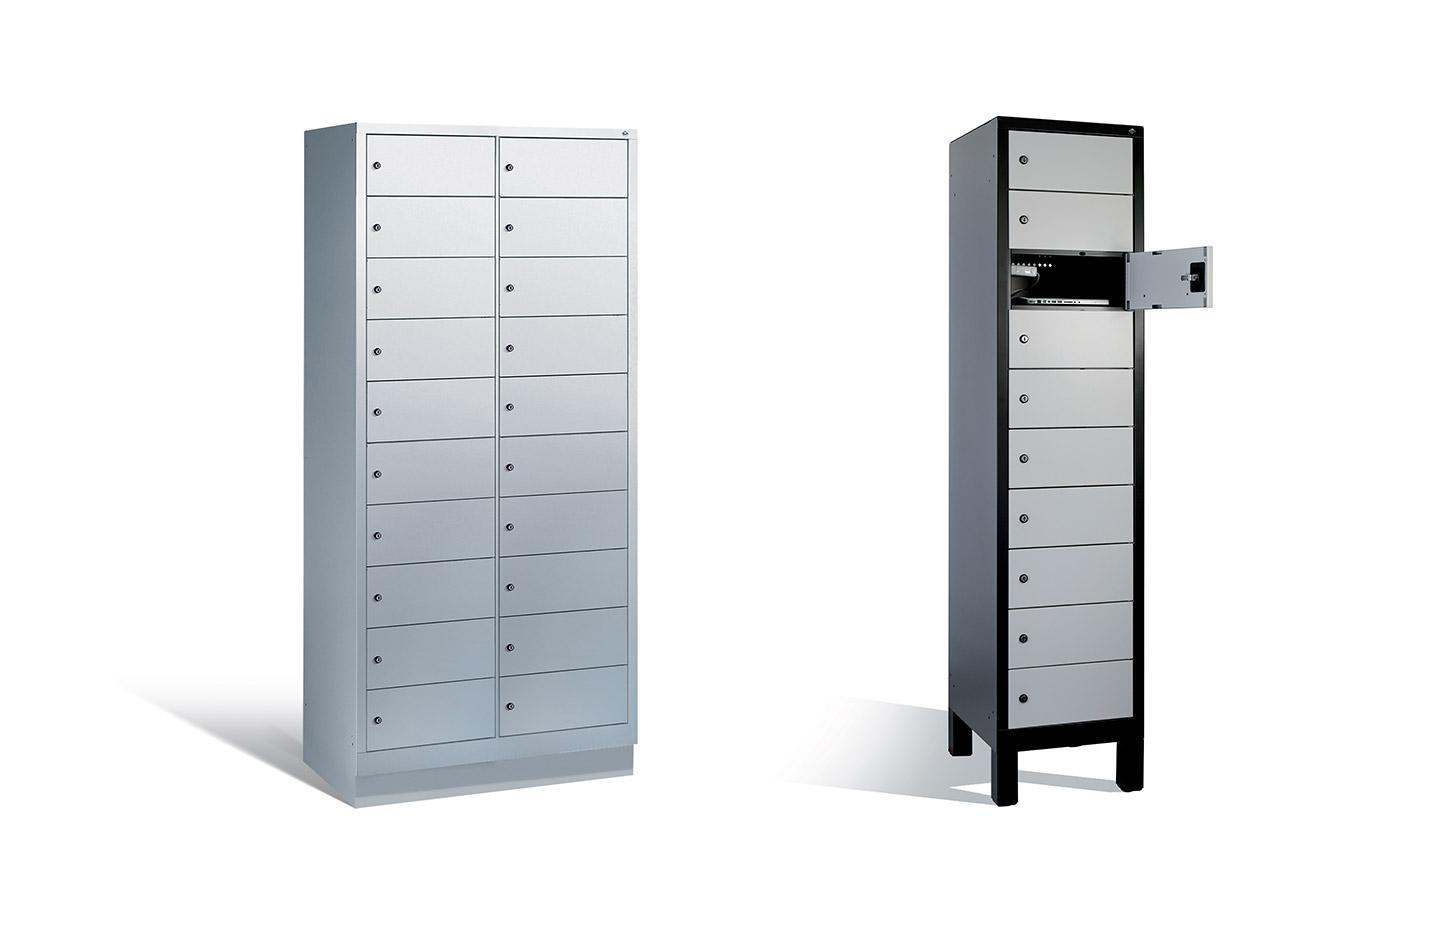 Vestiaire, armoires basse avec 2 formats de casiers, gamme Ferlet, mobilier de bureau France Bureau